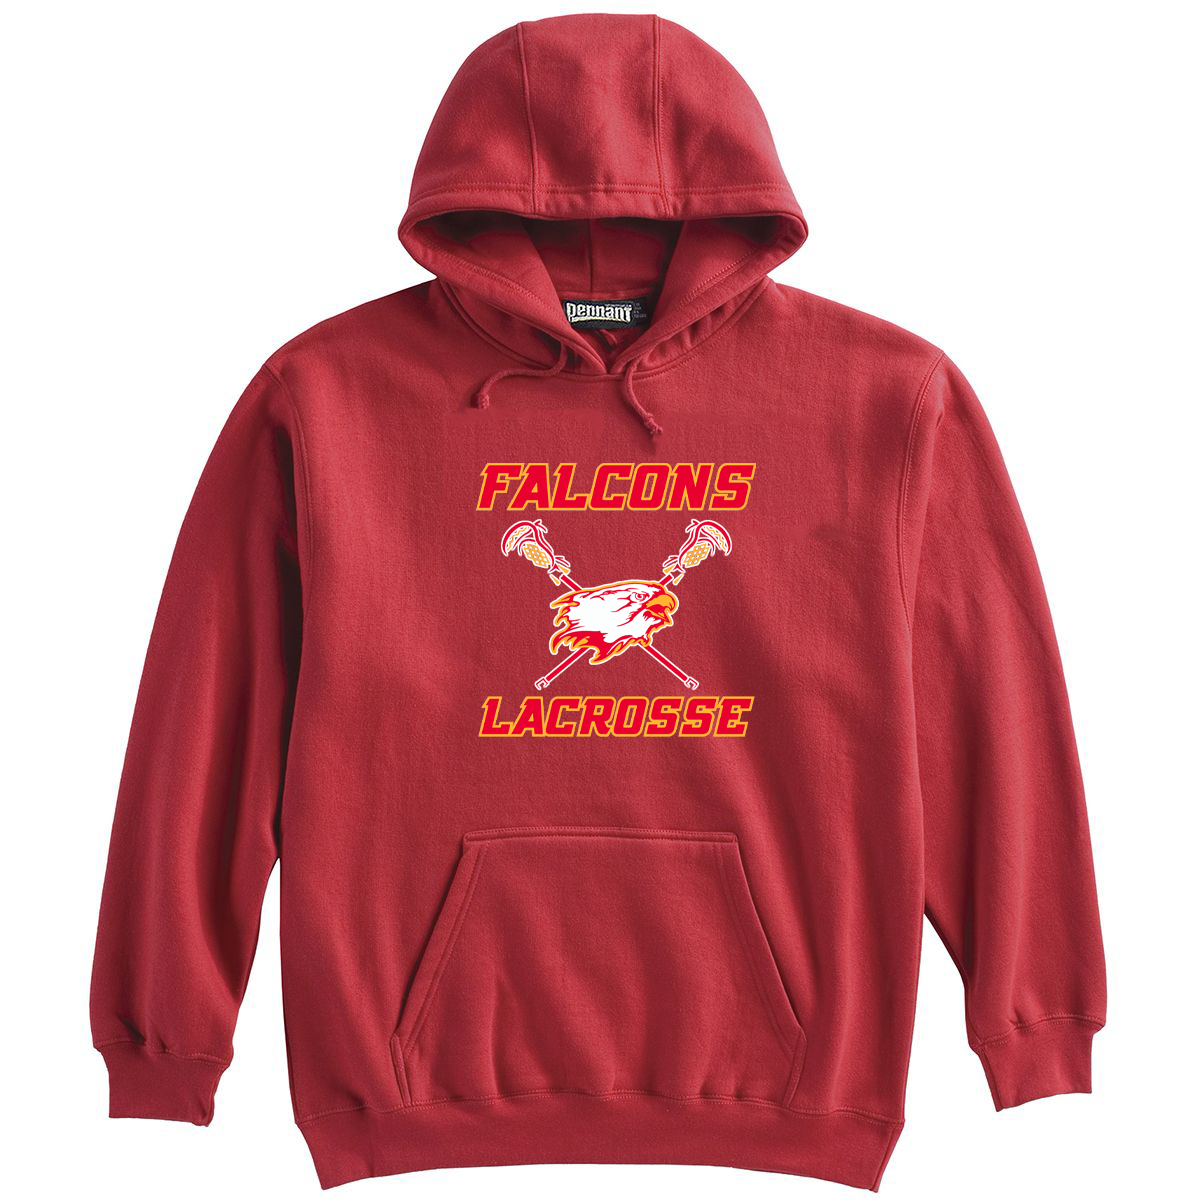 Falcons Lacrosse Club Sweatshirt